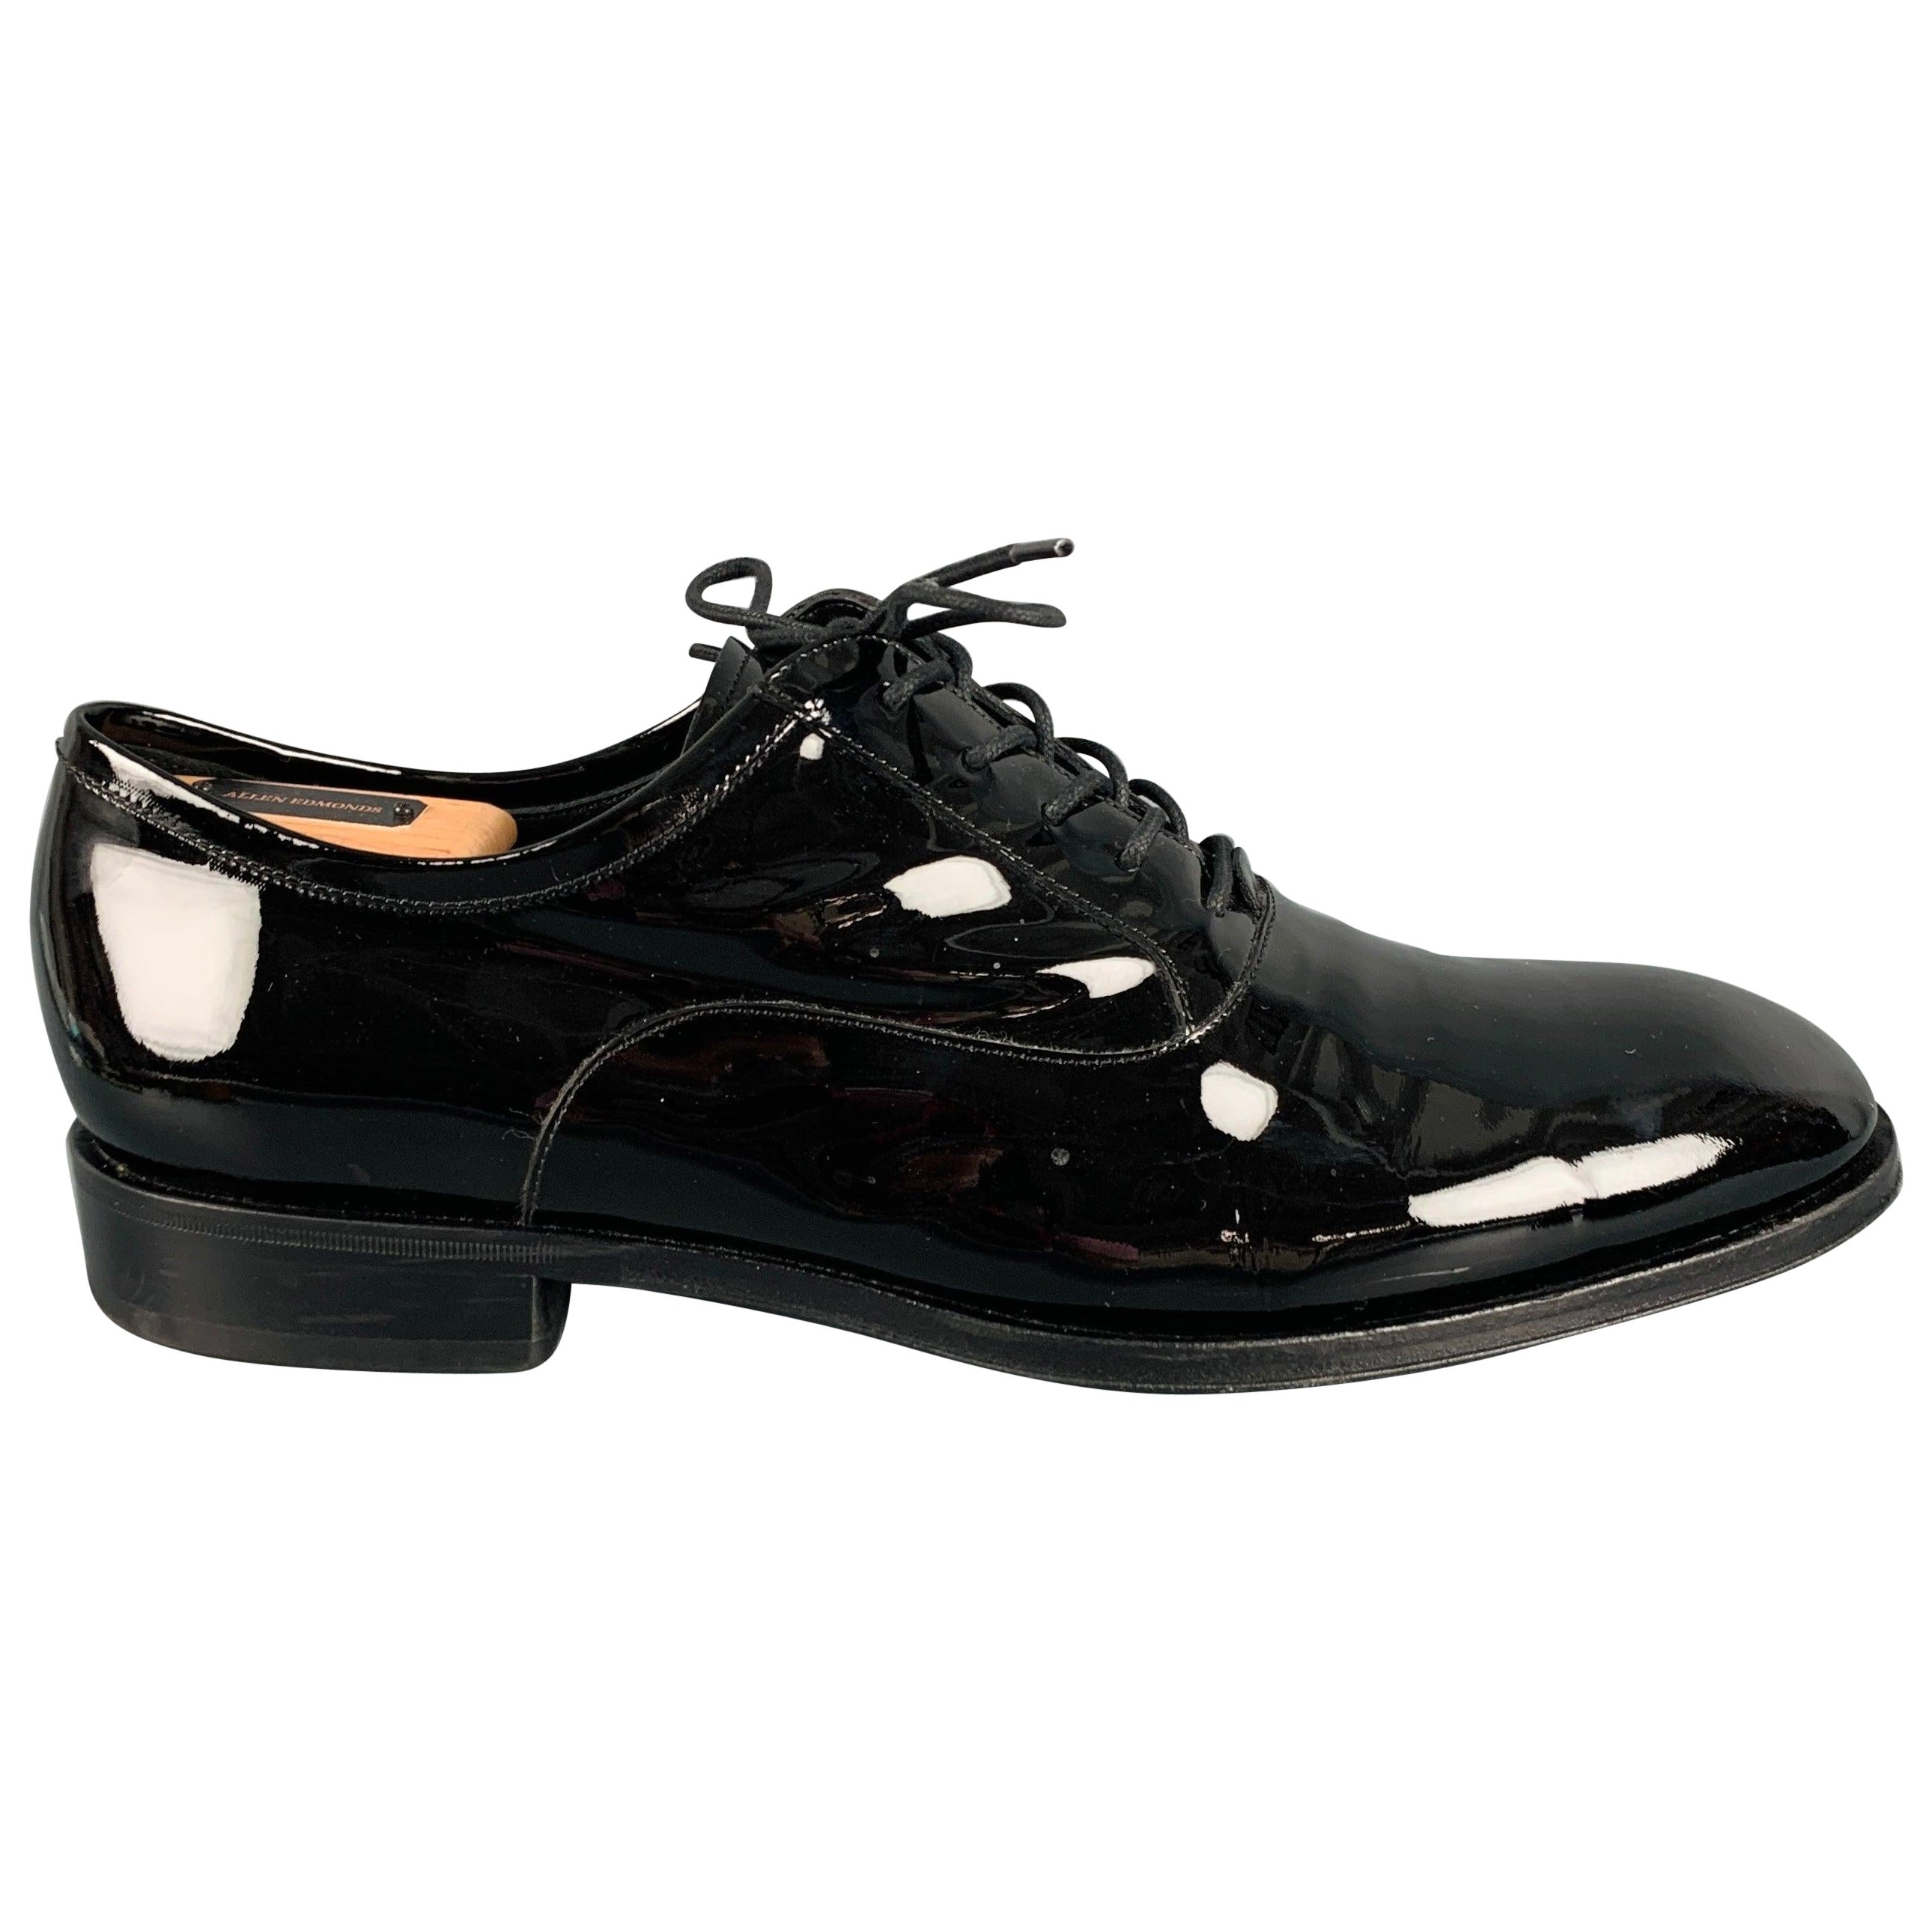 ALLEN EDMONDS Size 11 Black Patent Leather Lace-Up Shoes For Sale